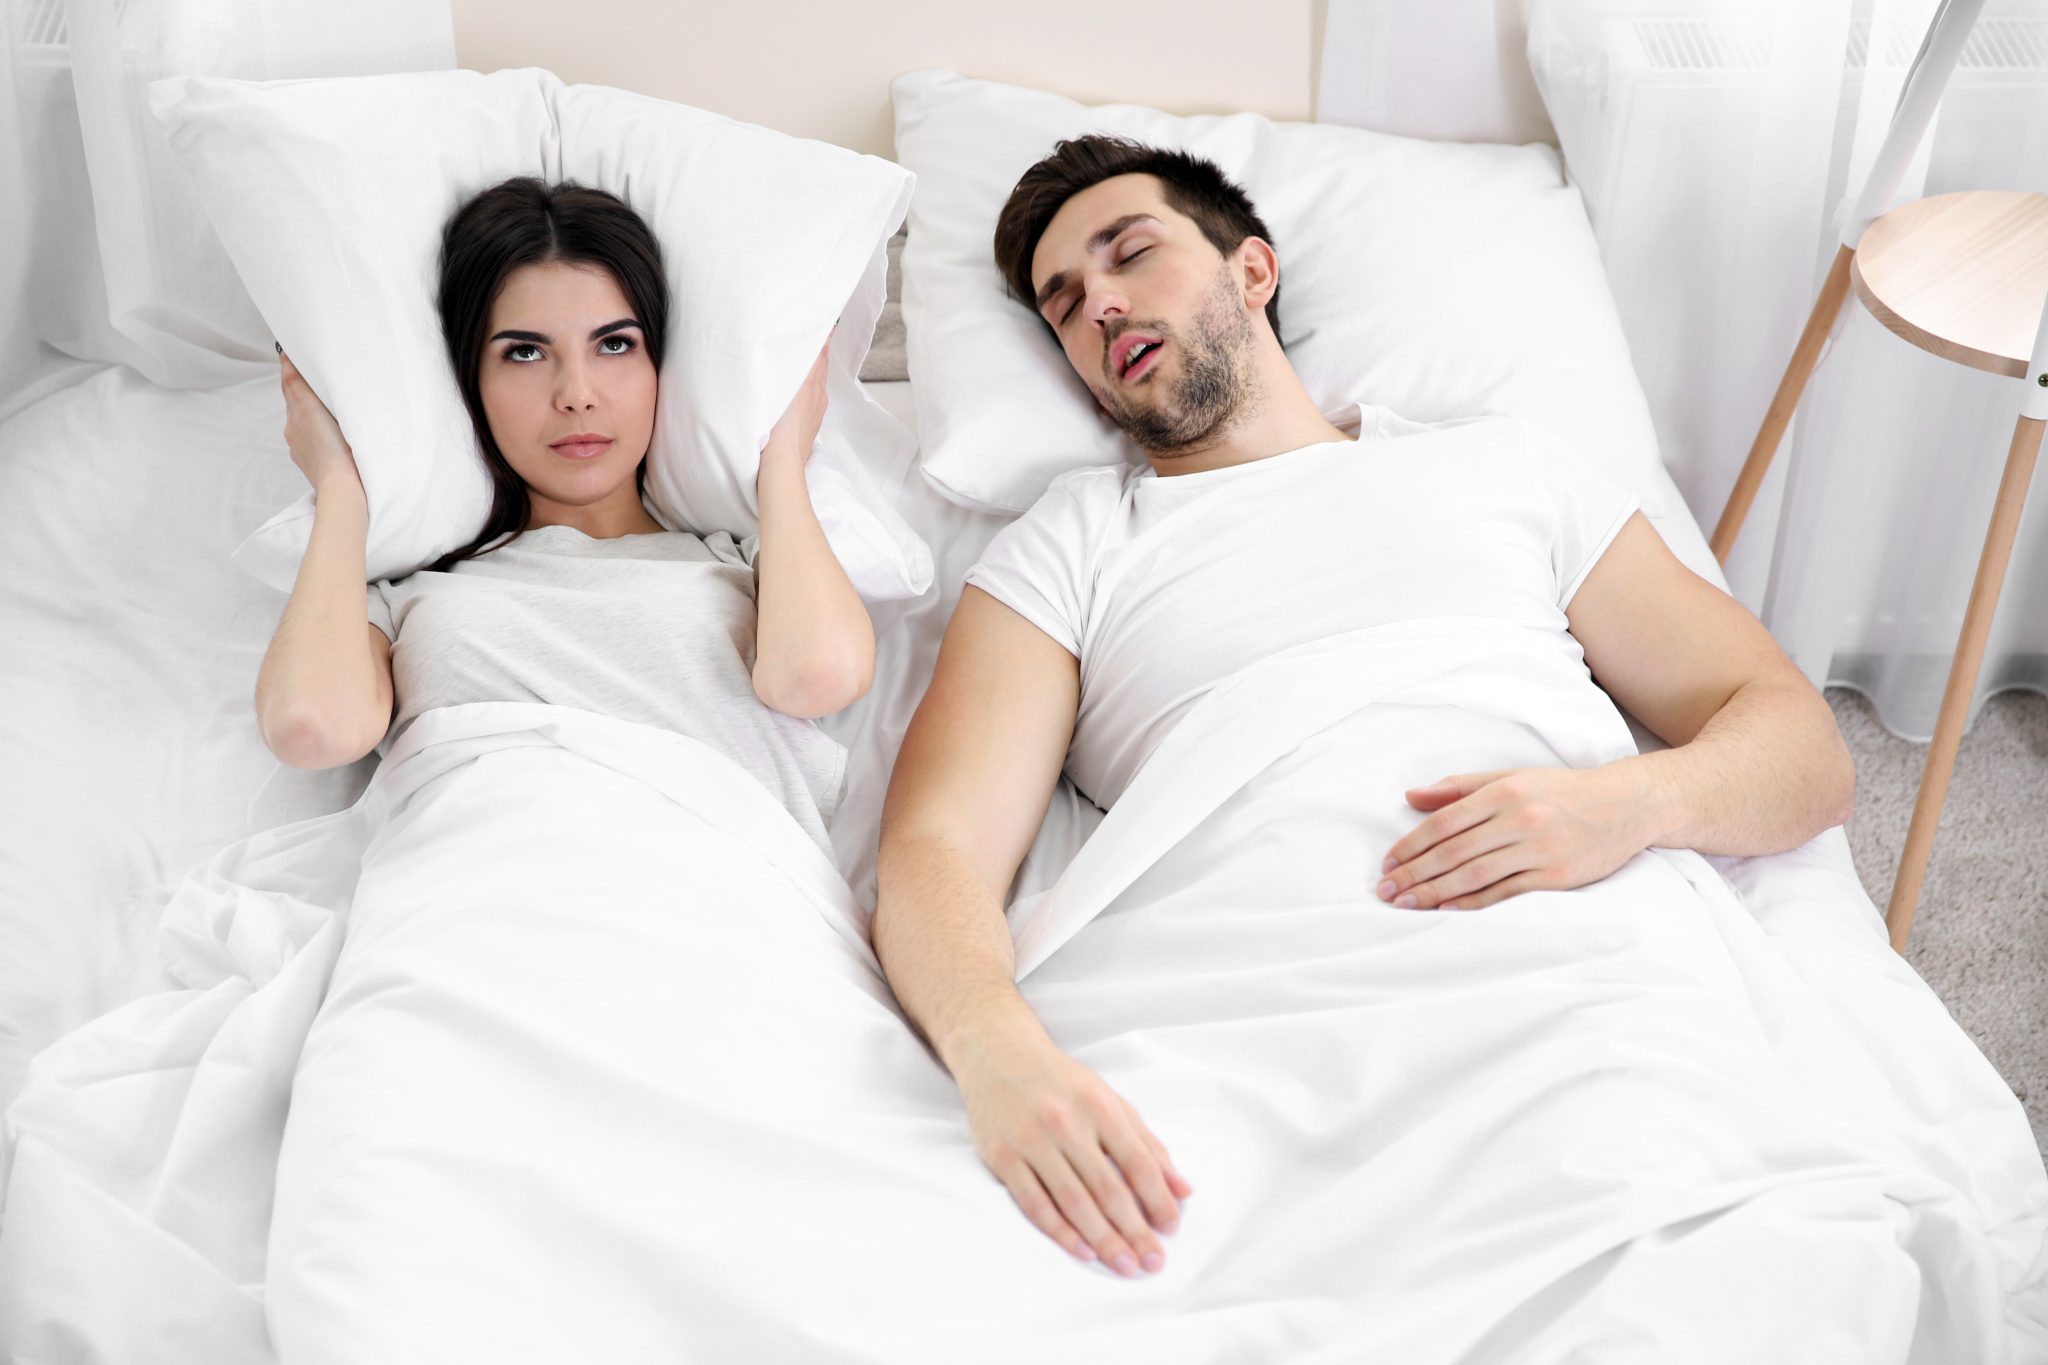 Сны к замужеству. Храп фото. В спальне храпящие супруги. Сон в разных комнатах. Фотосессия в пижаме на кровати.